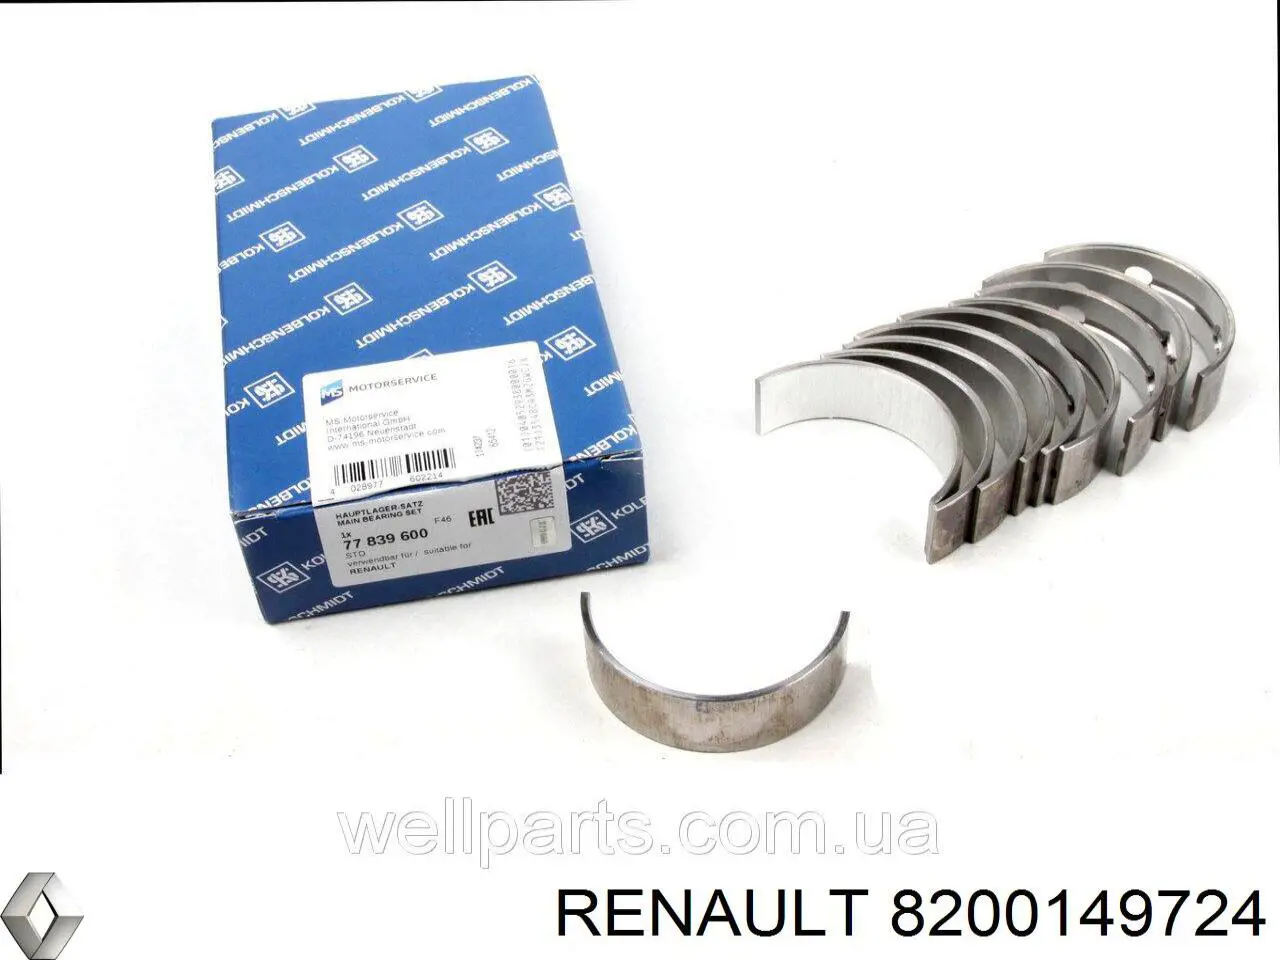 8200149724 Renault (RVI) вкладиші колінвала, корінні, комплект, стандарт (std)